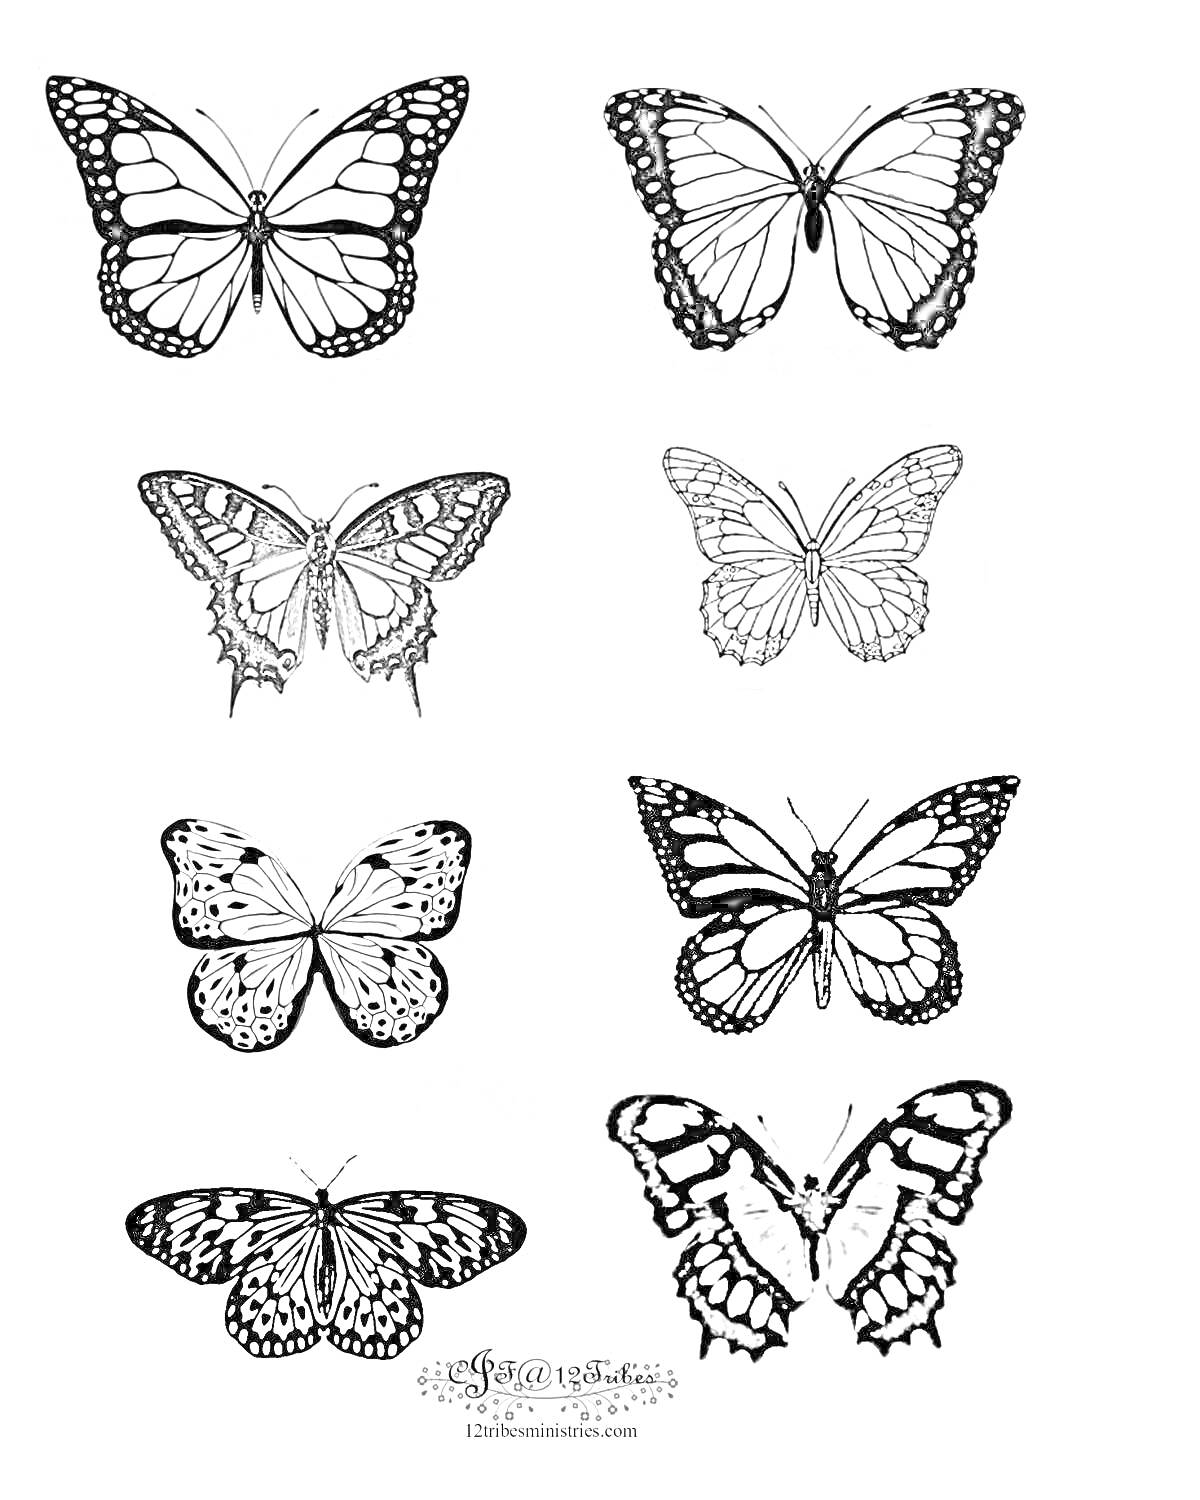 Раскраска Восемь маленьких бабочек с различными дизайнами крыльев